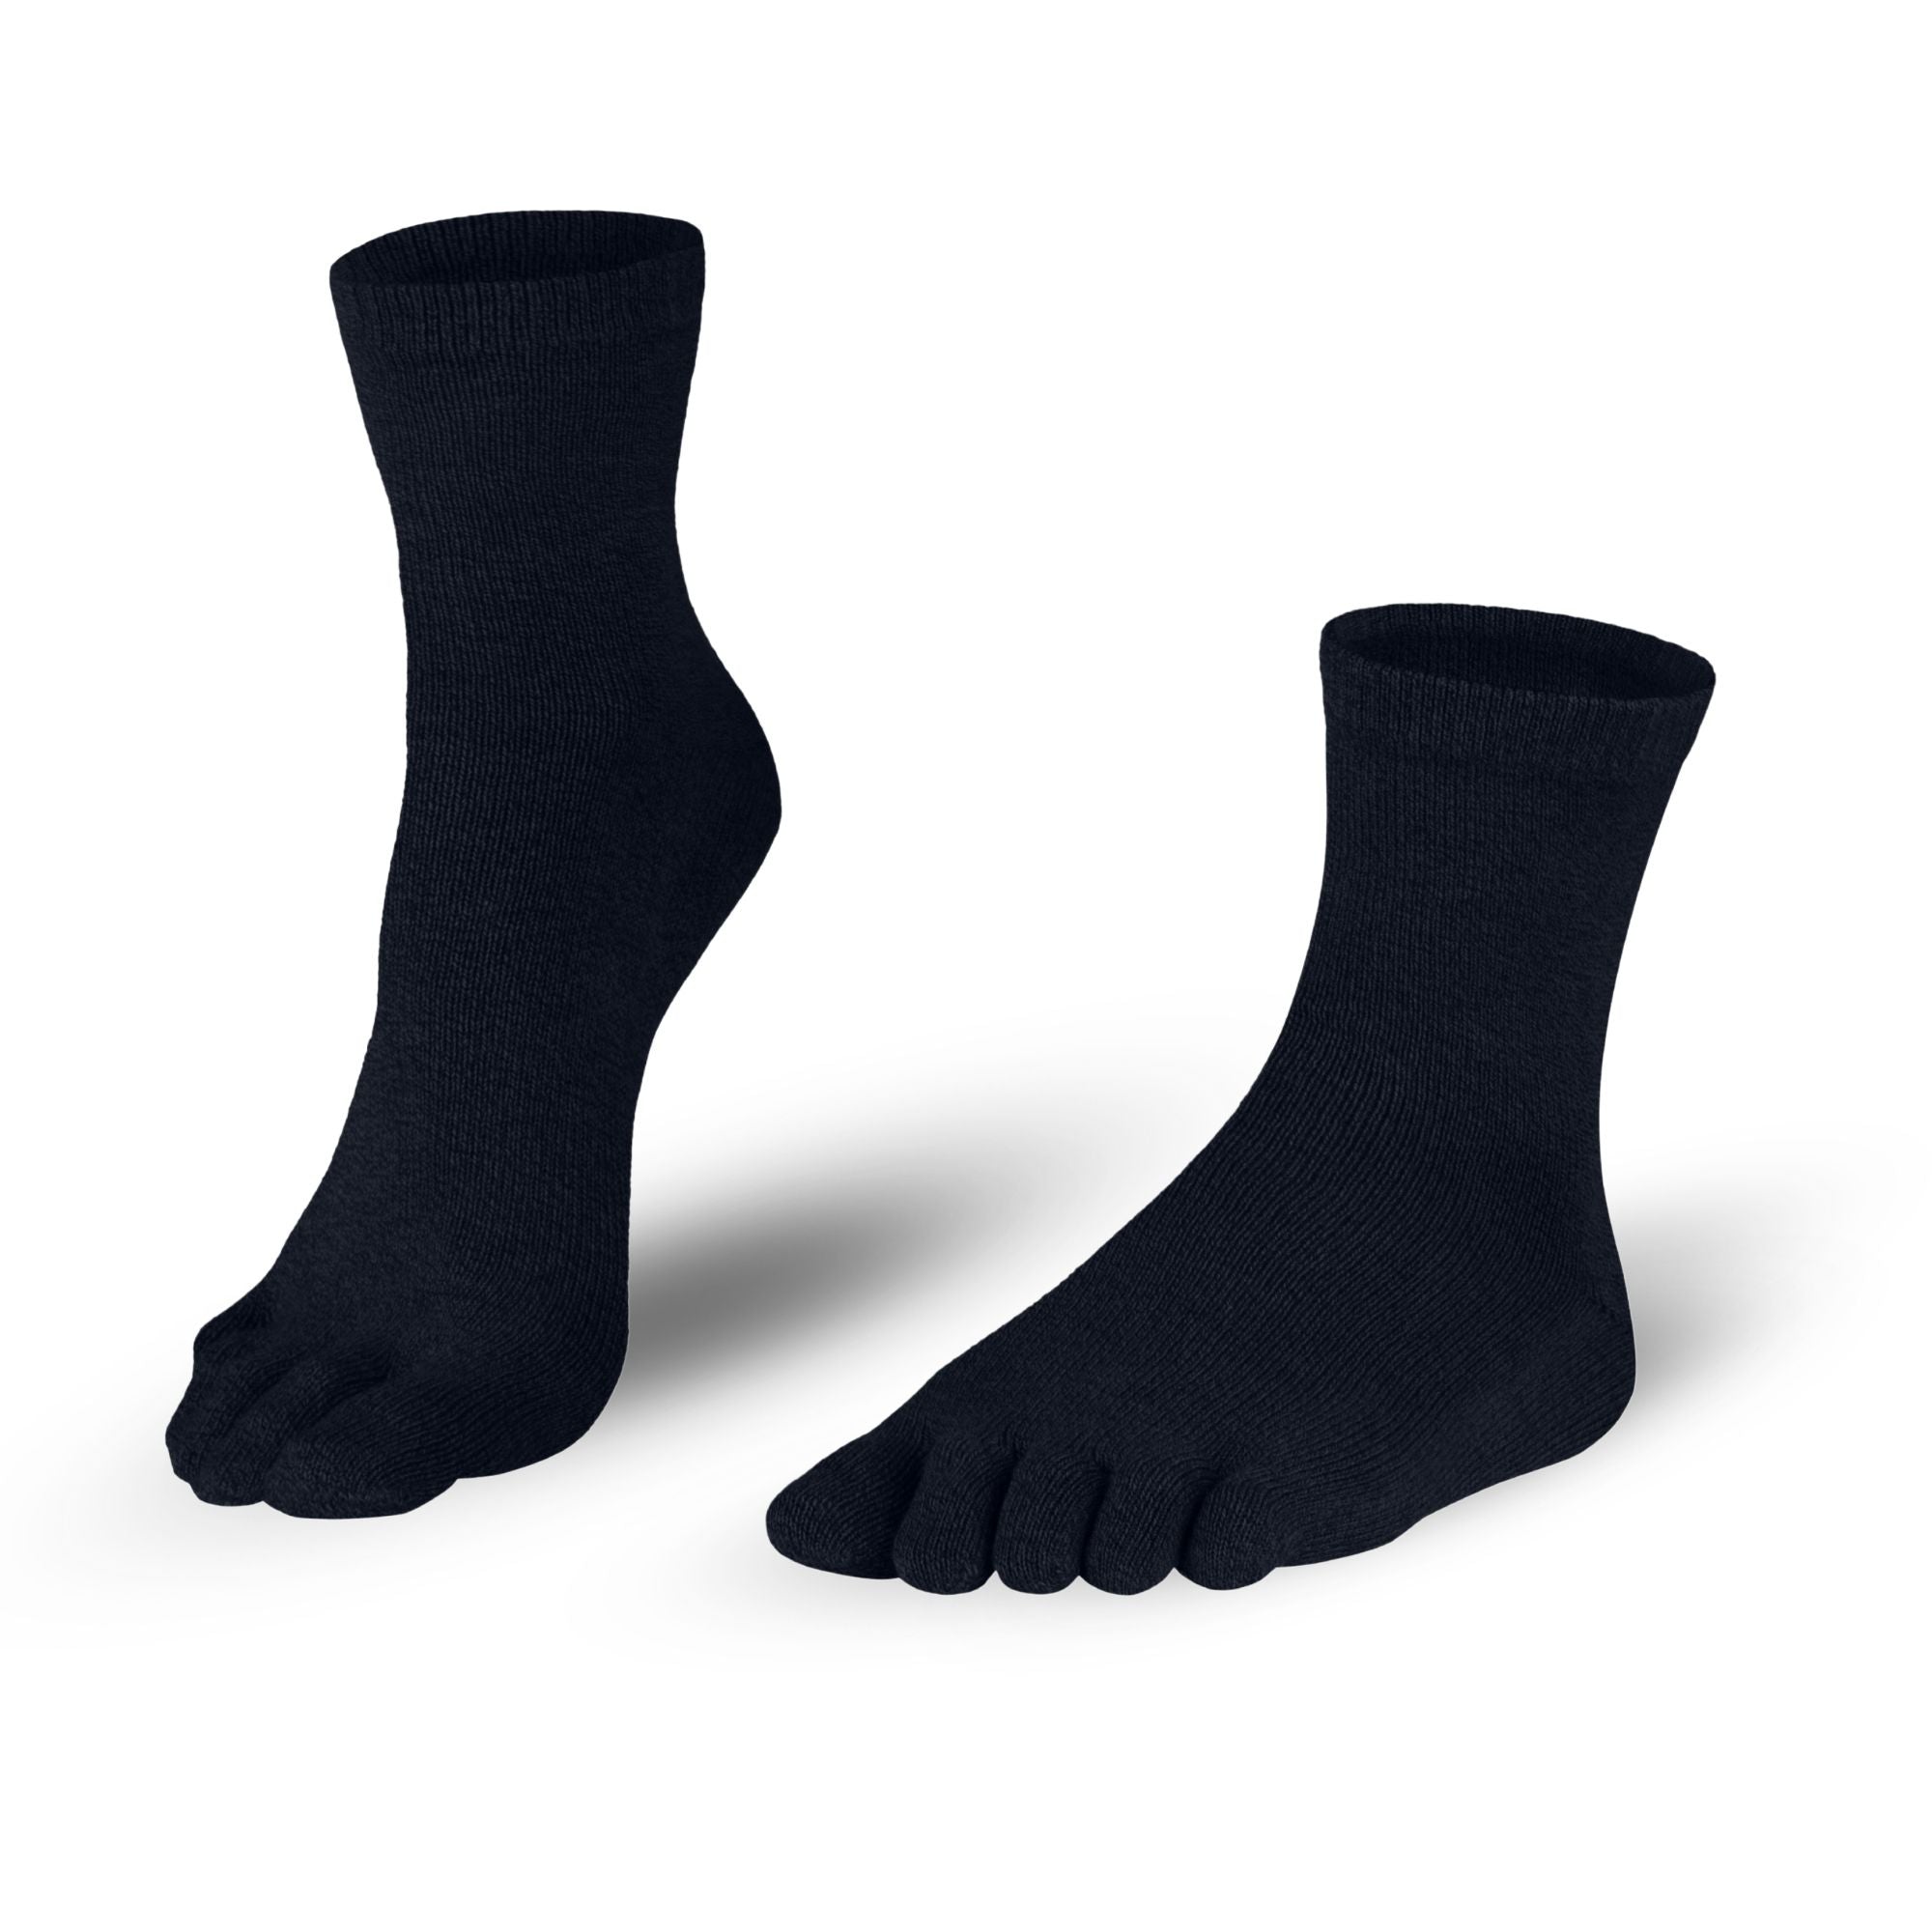 Bombažne nogavice za prste nogavic v črni barvi za dame in gospode